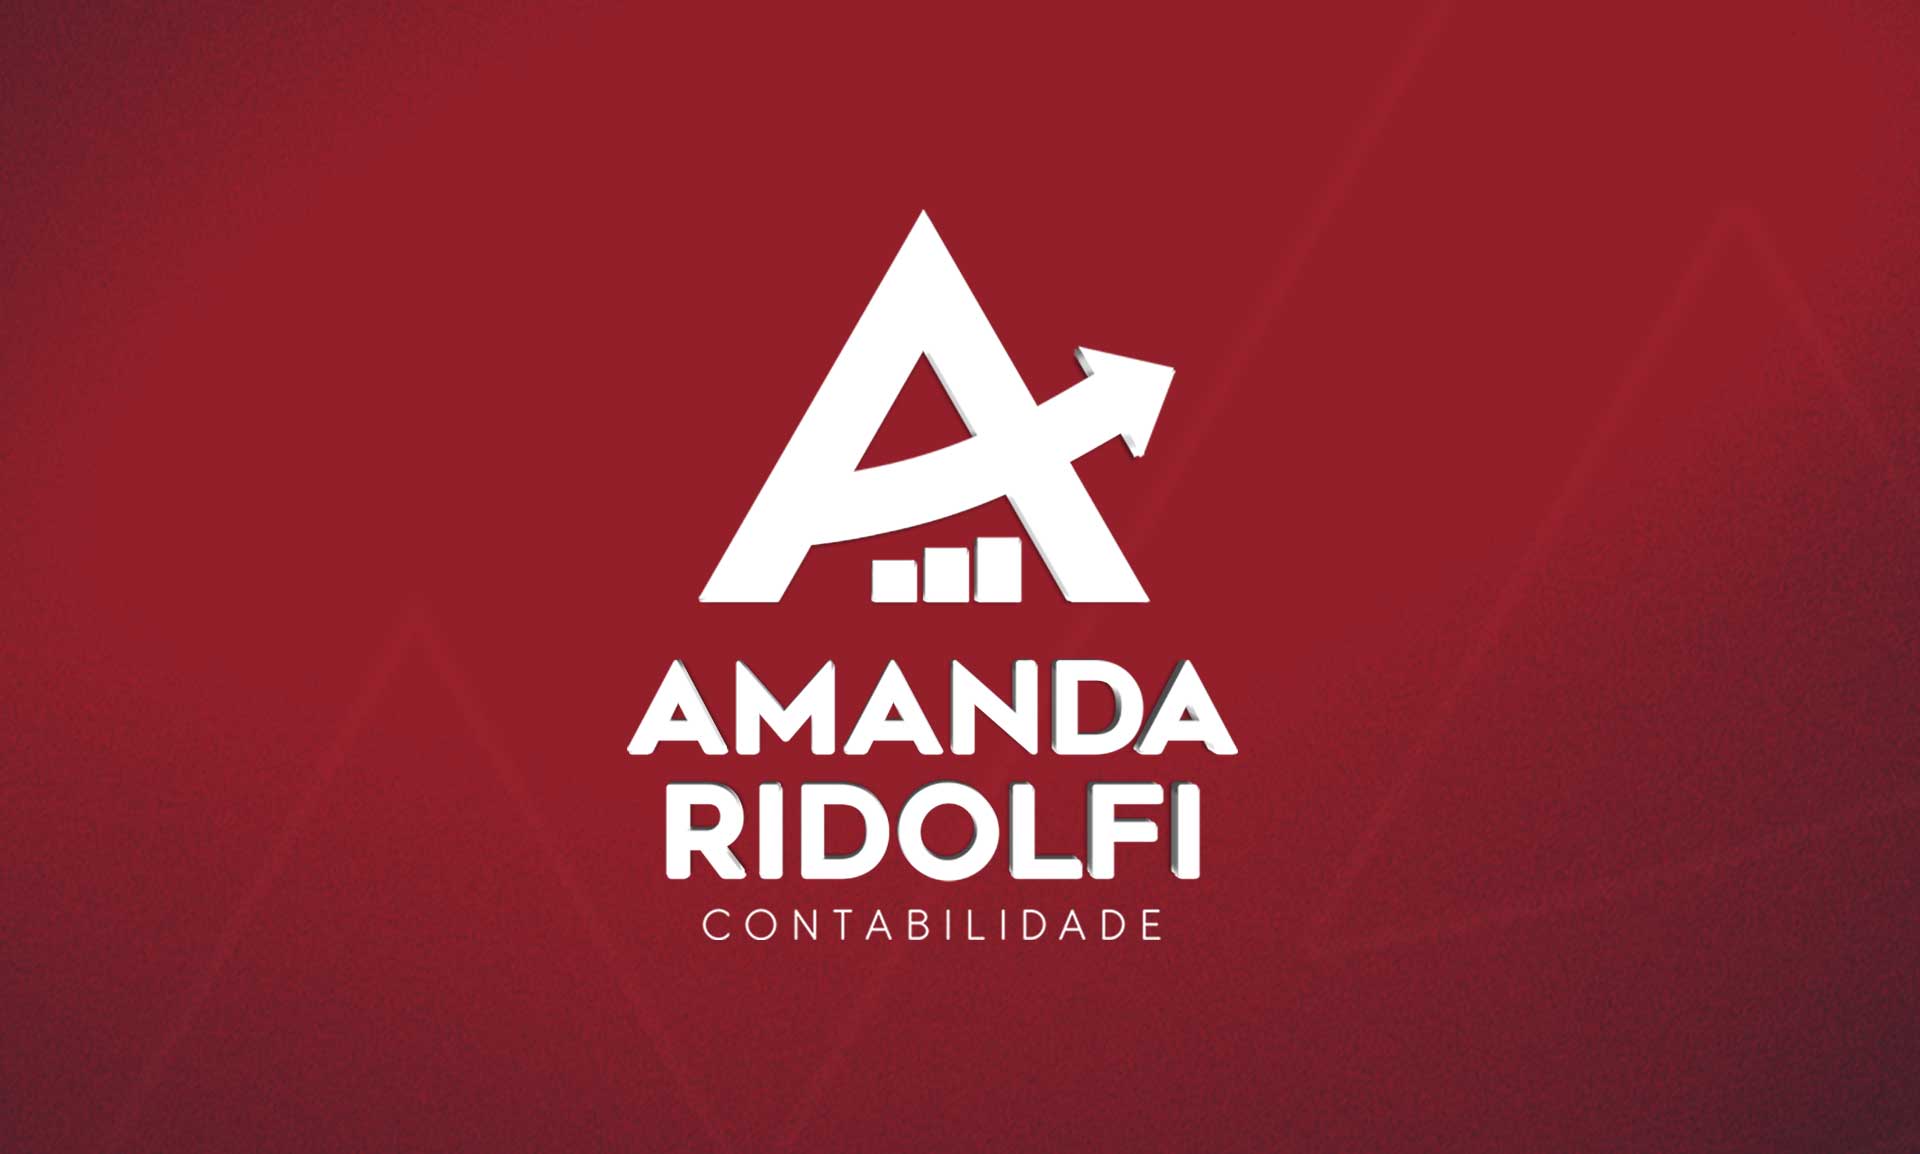 Amanda-ridolfi-contabilidade_Luva-comunicação_identidade-visual_ART_foto03a